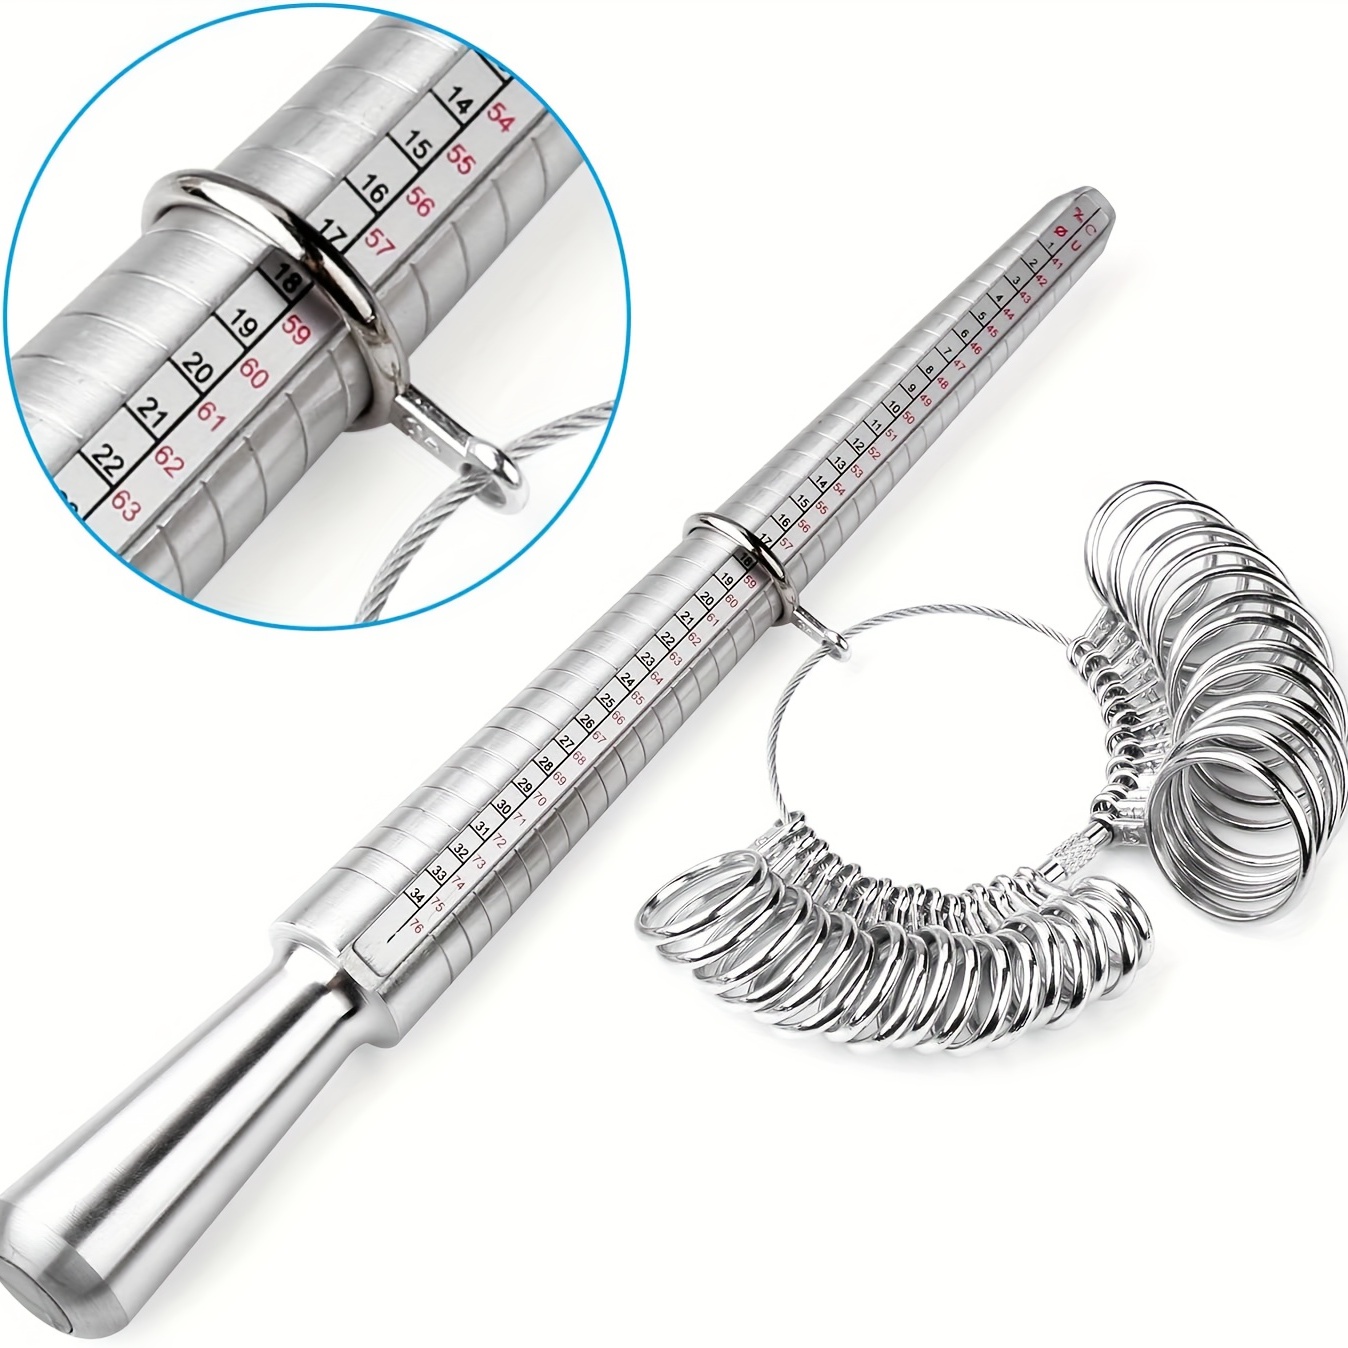 Ring Sizer Measuring Tool Including Ring Mandrel Ring Gauge - Temu